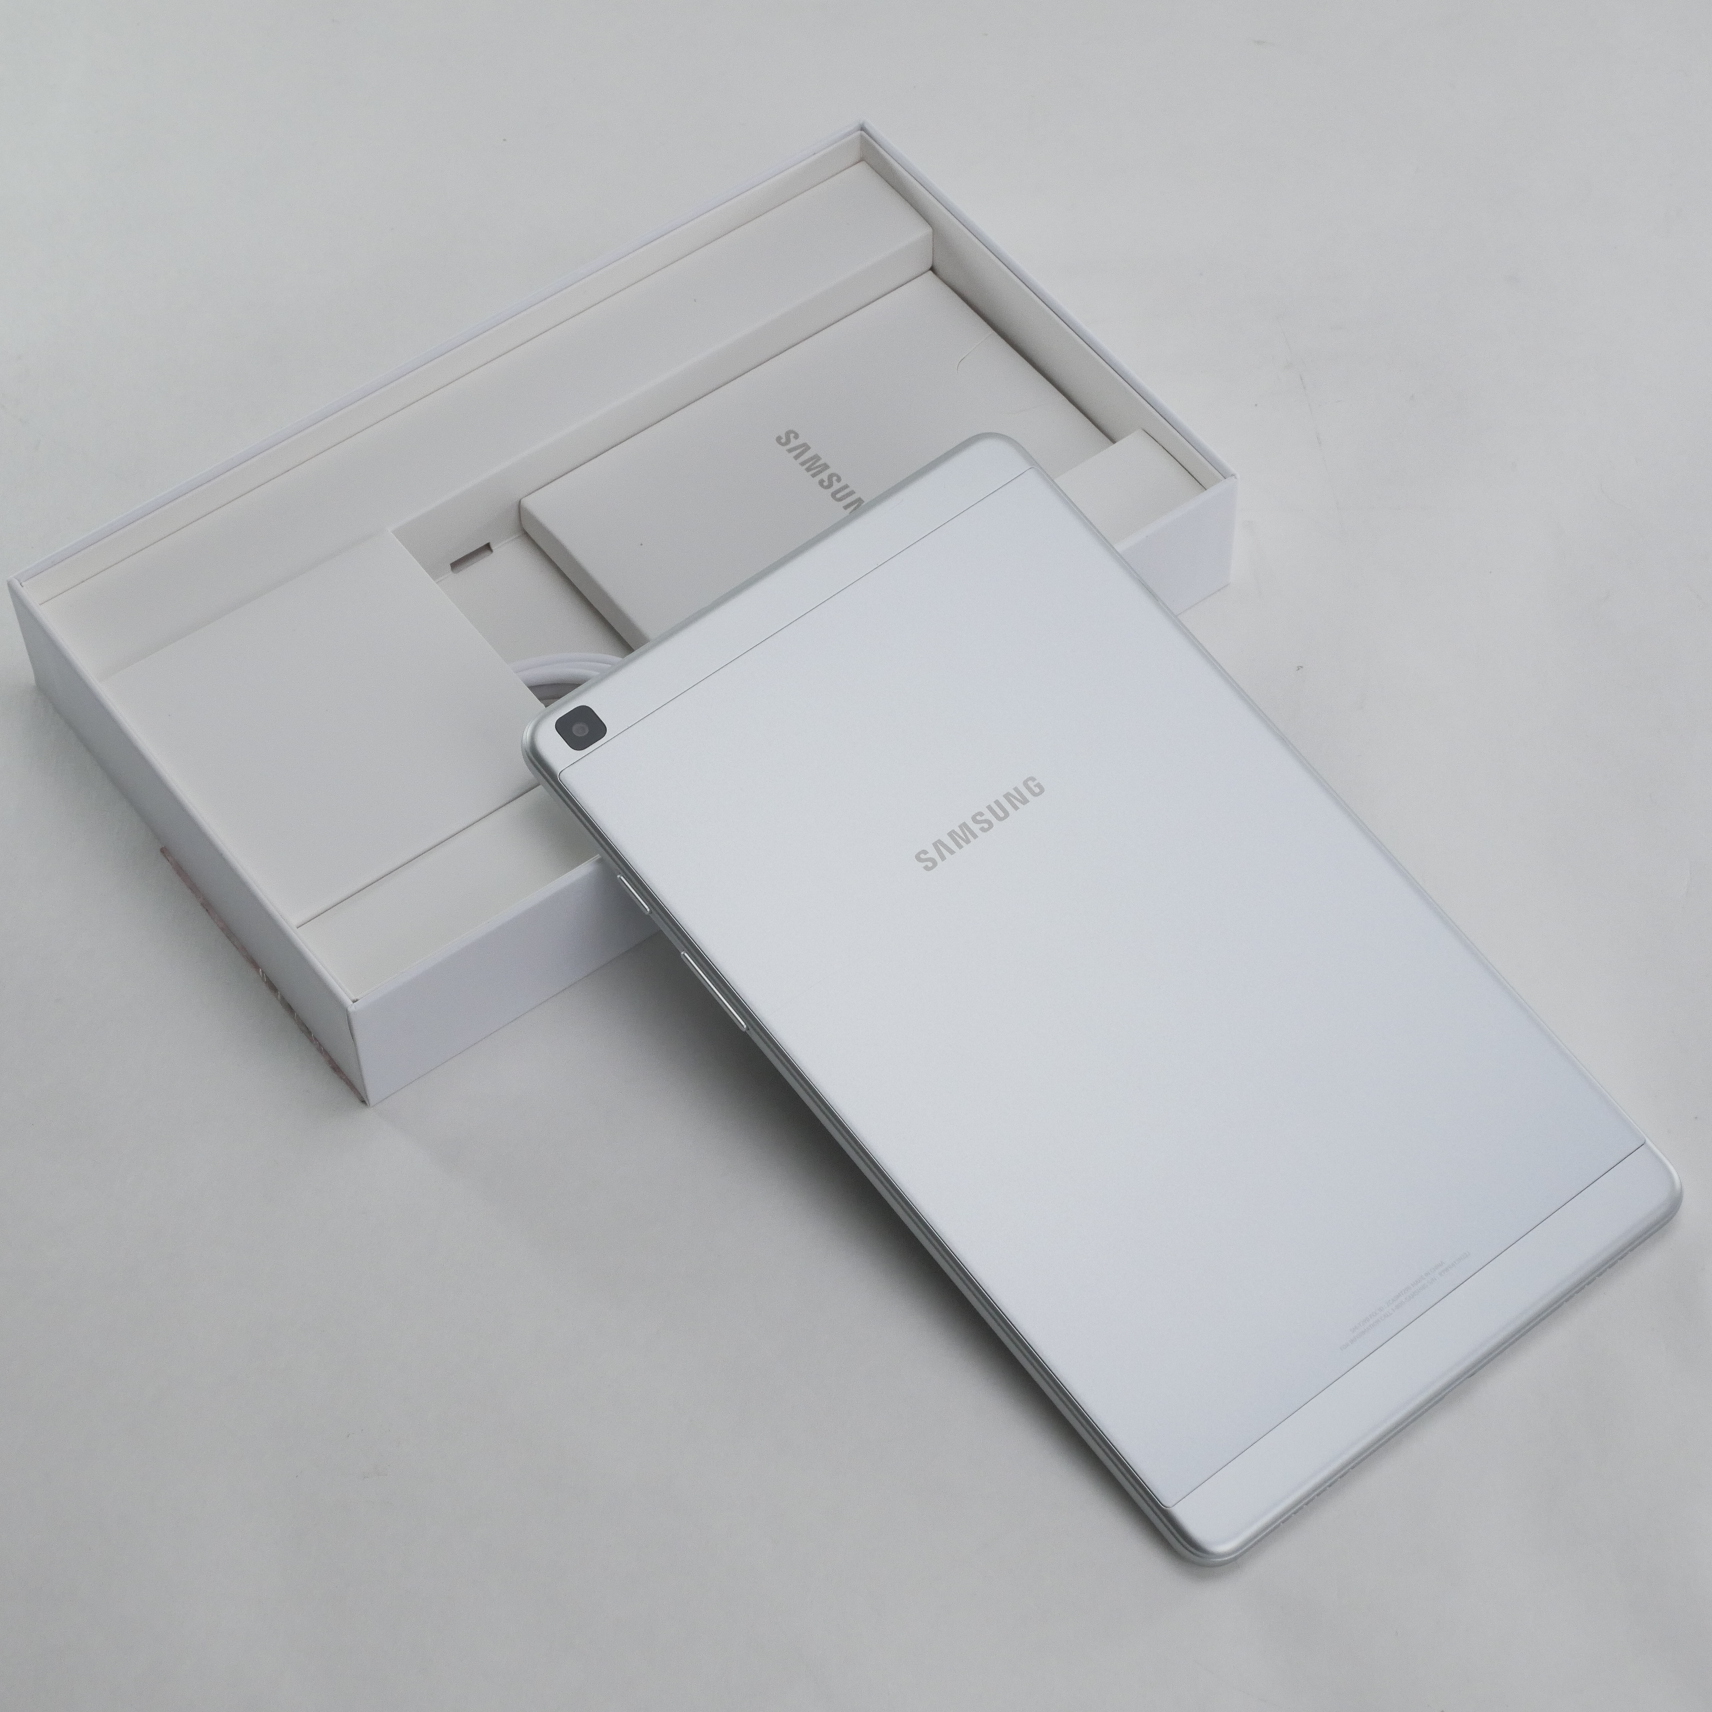 Samsung Galaxy Tab A (2019) SM-T290 32GB, Wi-Fi, 8 in - Silver - SM-T290NZSAXAR